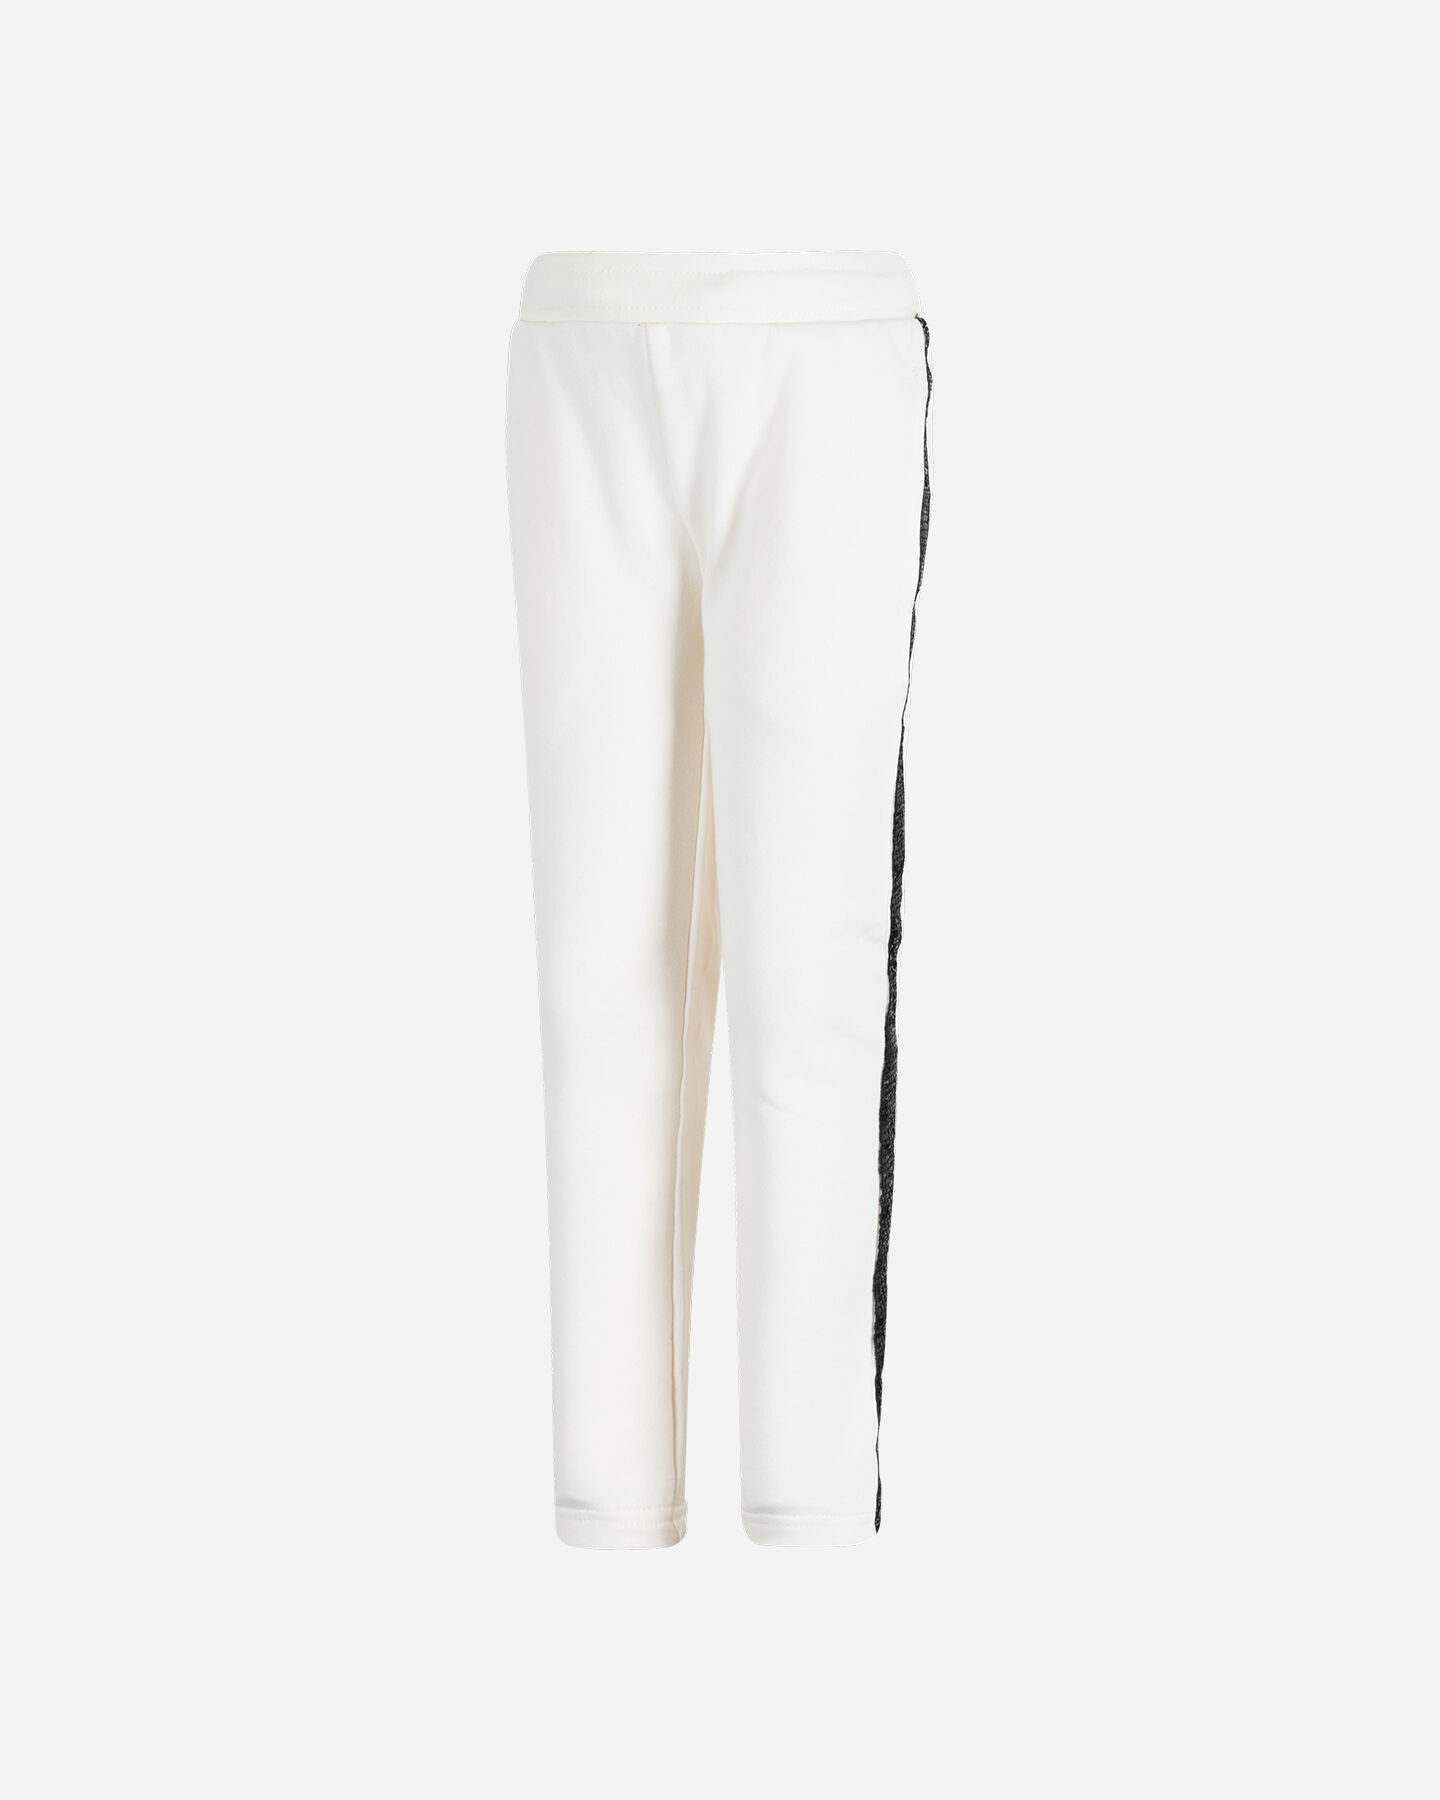  Pantalone ADMIRAL GRAPHIC LOGO JR S4106619|002|4A scatto 0